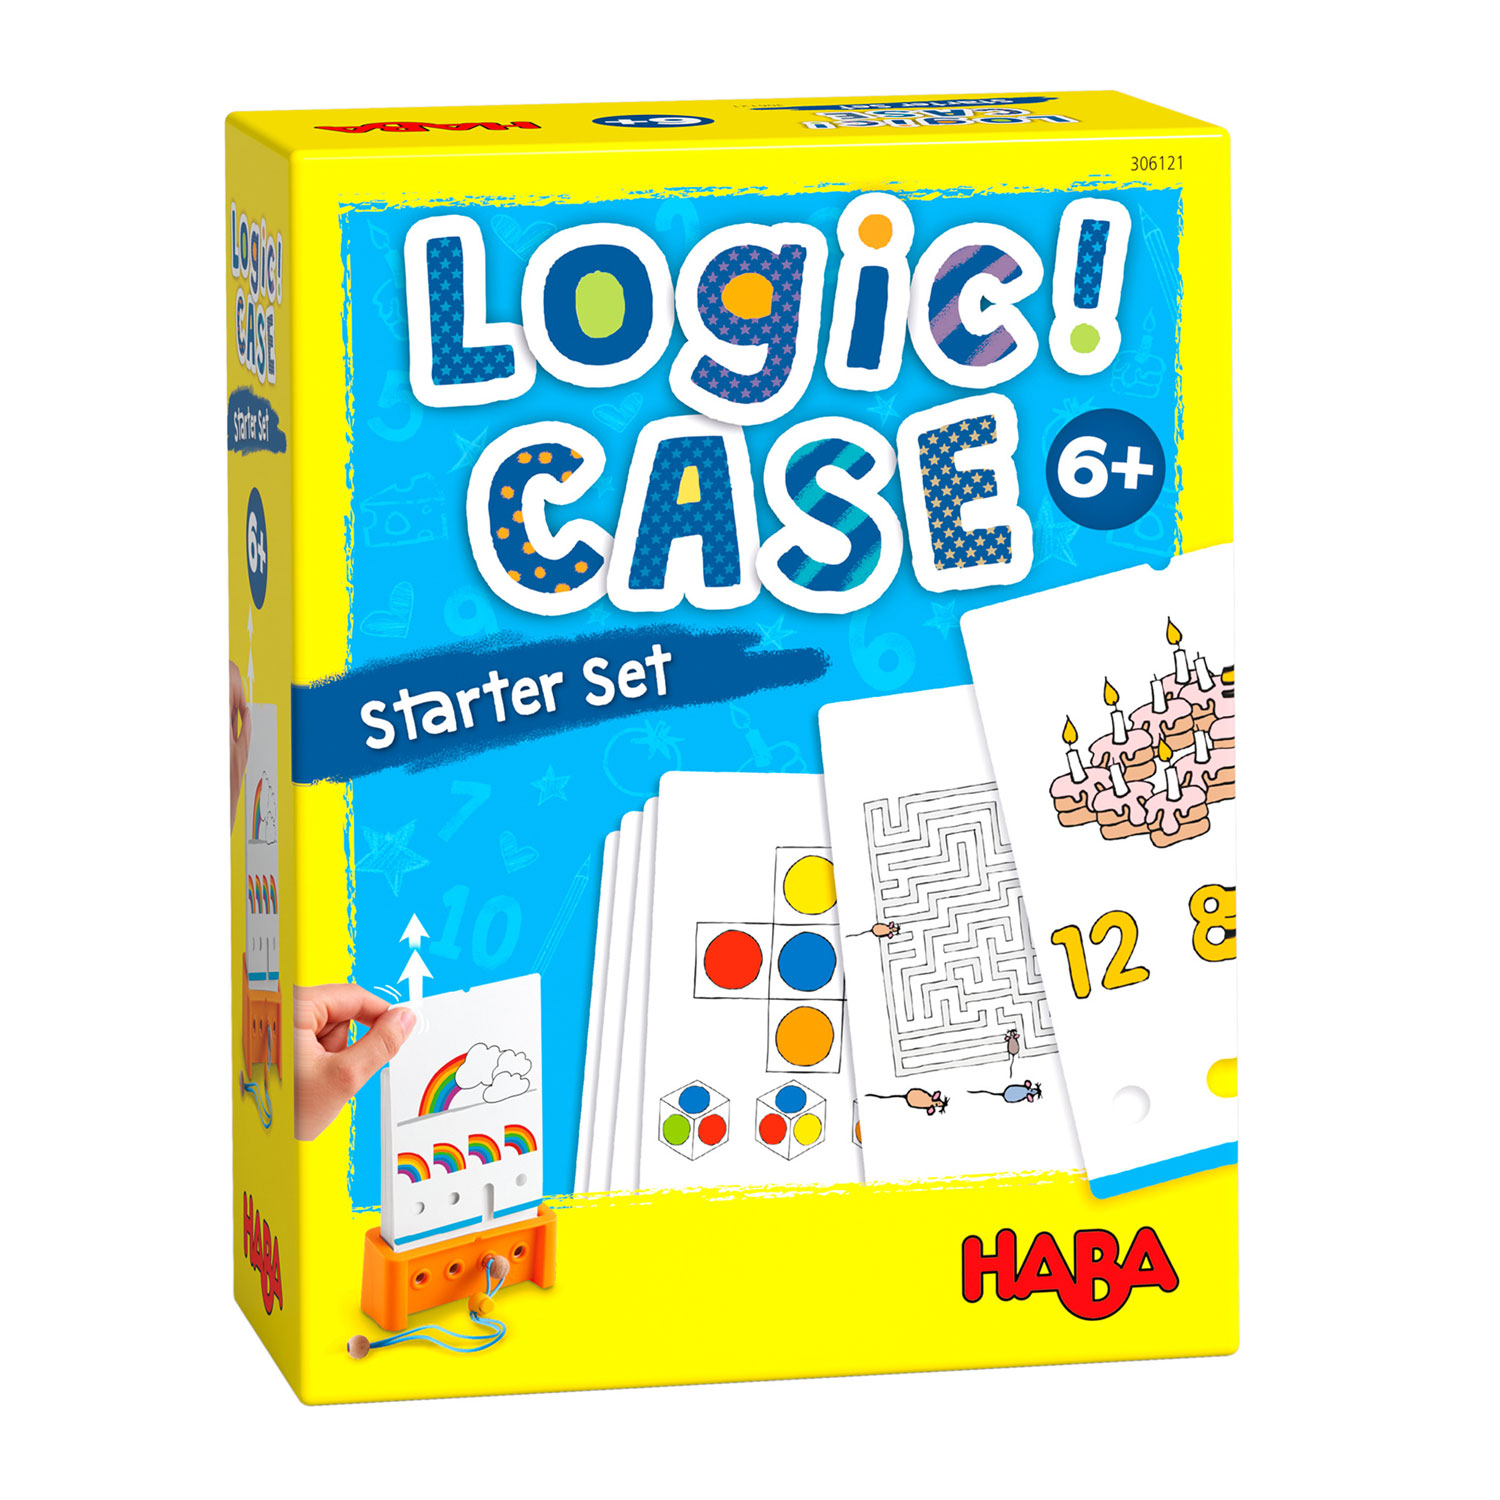 eerlijk Fantasie Maestro Haba Spel - Logic! CASE - Startersset 6+ online ... | Lobbes Speelgoed